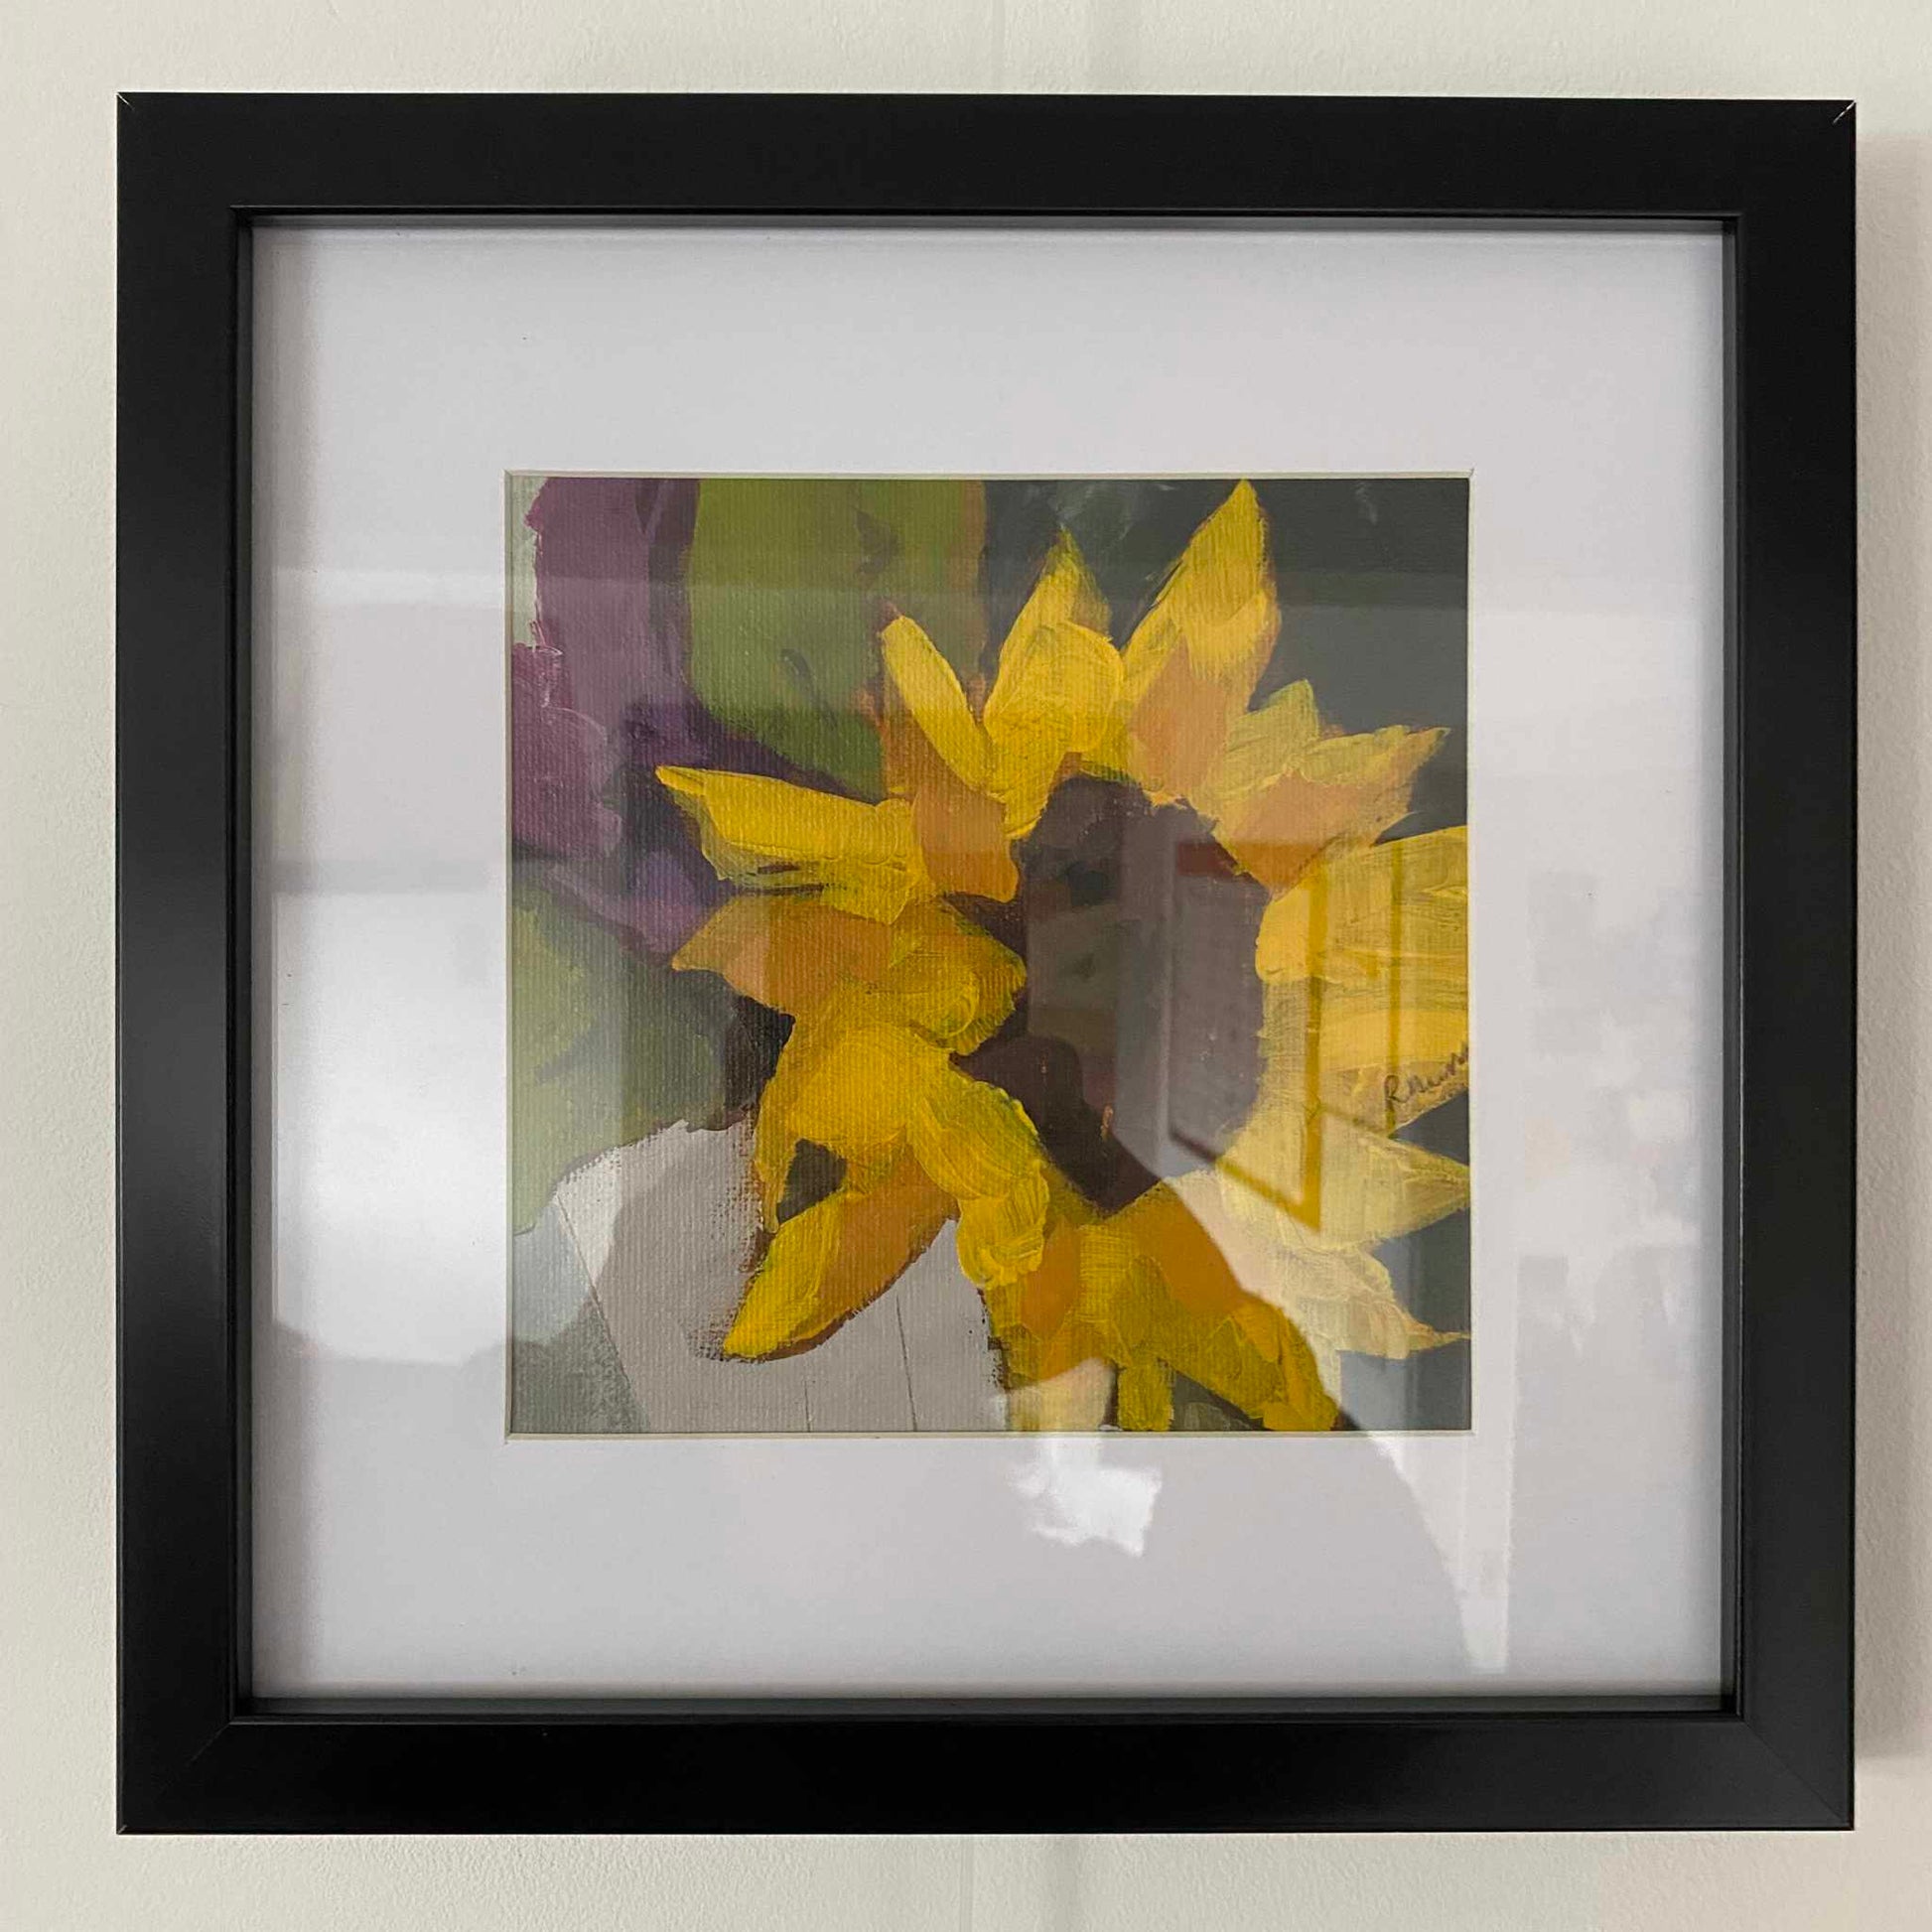 Sunflower Painting by Rebecca Hurst Artist in Black frame